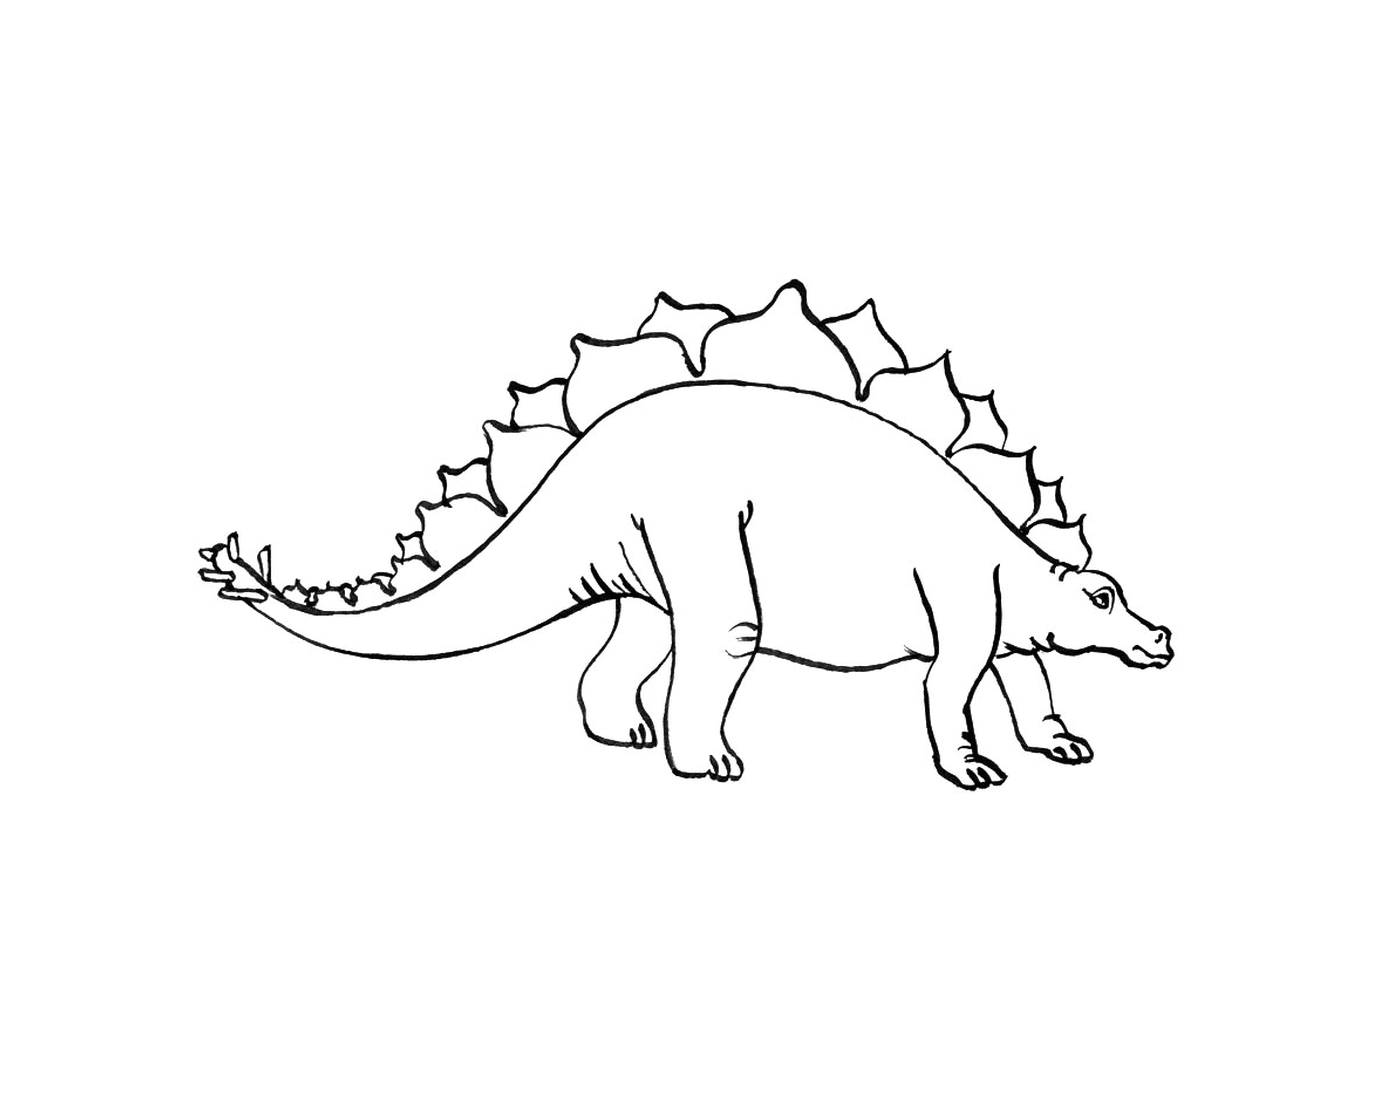  Stegosaure in piedi in un disegno bianco e nero 